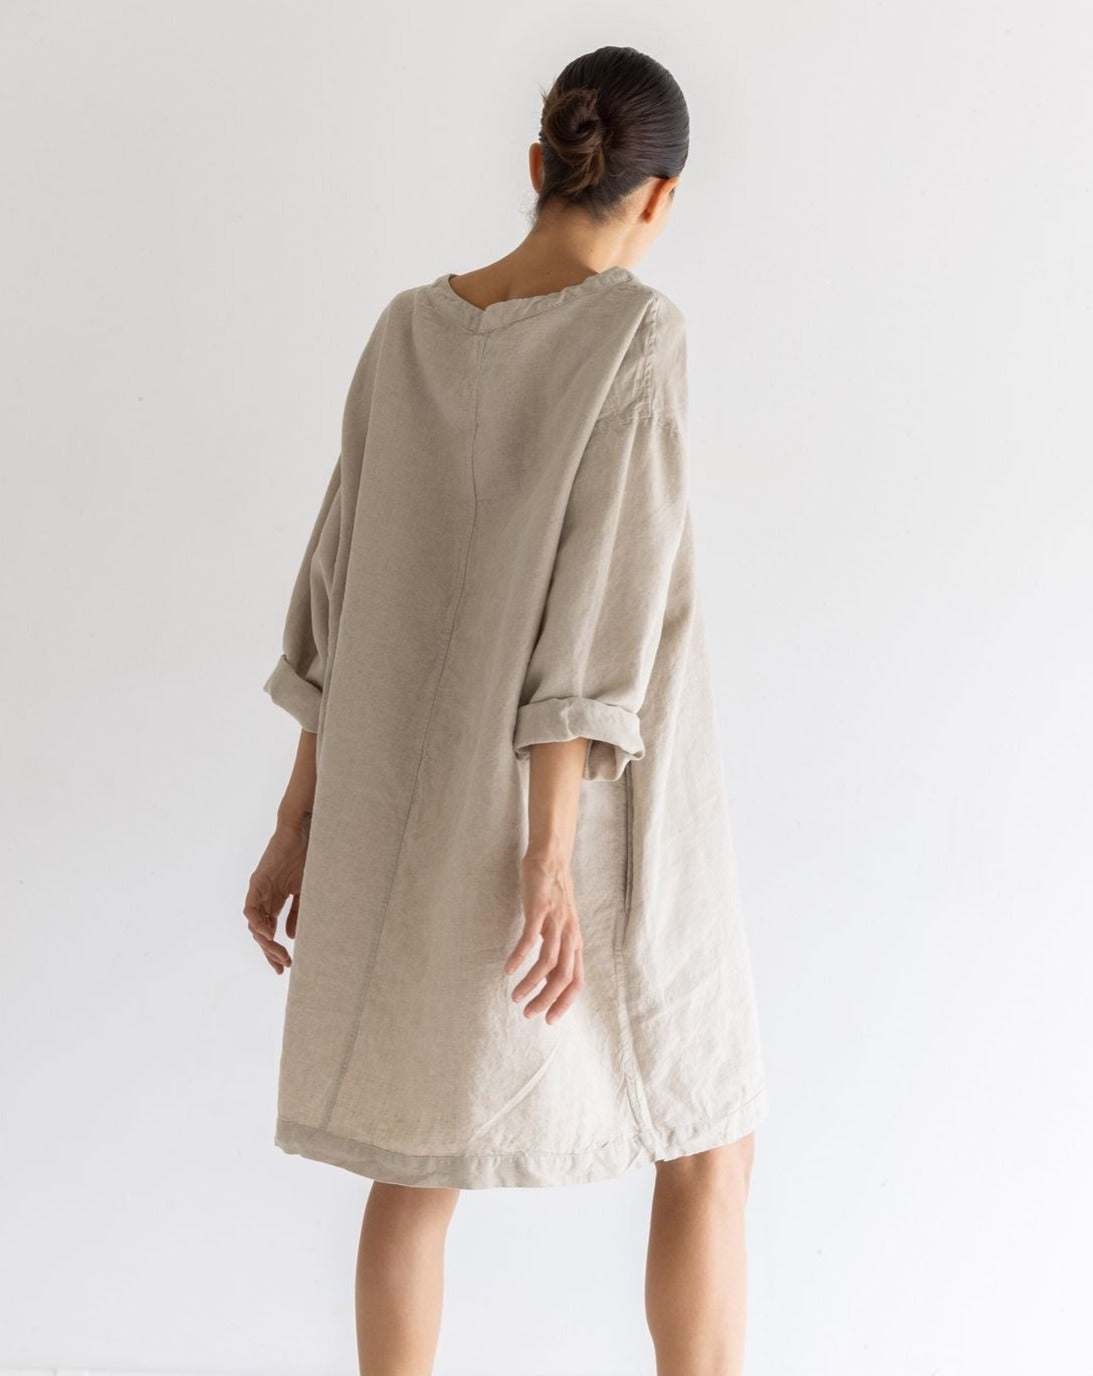 Tunic Linen Dress - Natural